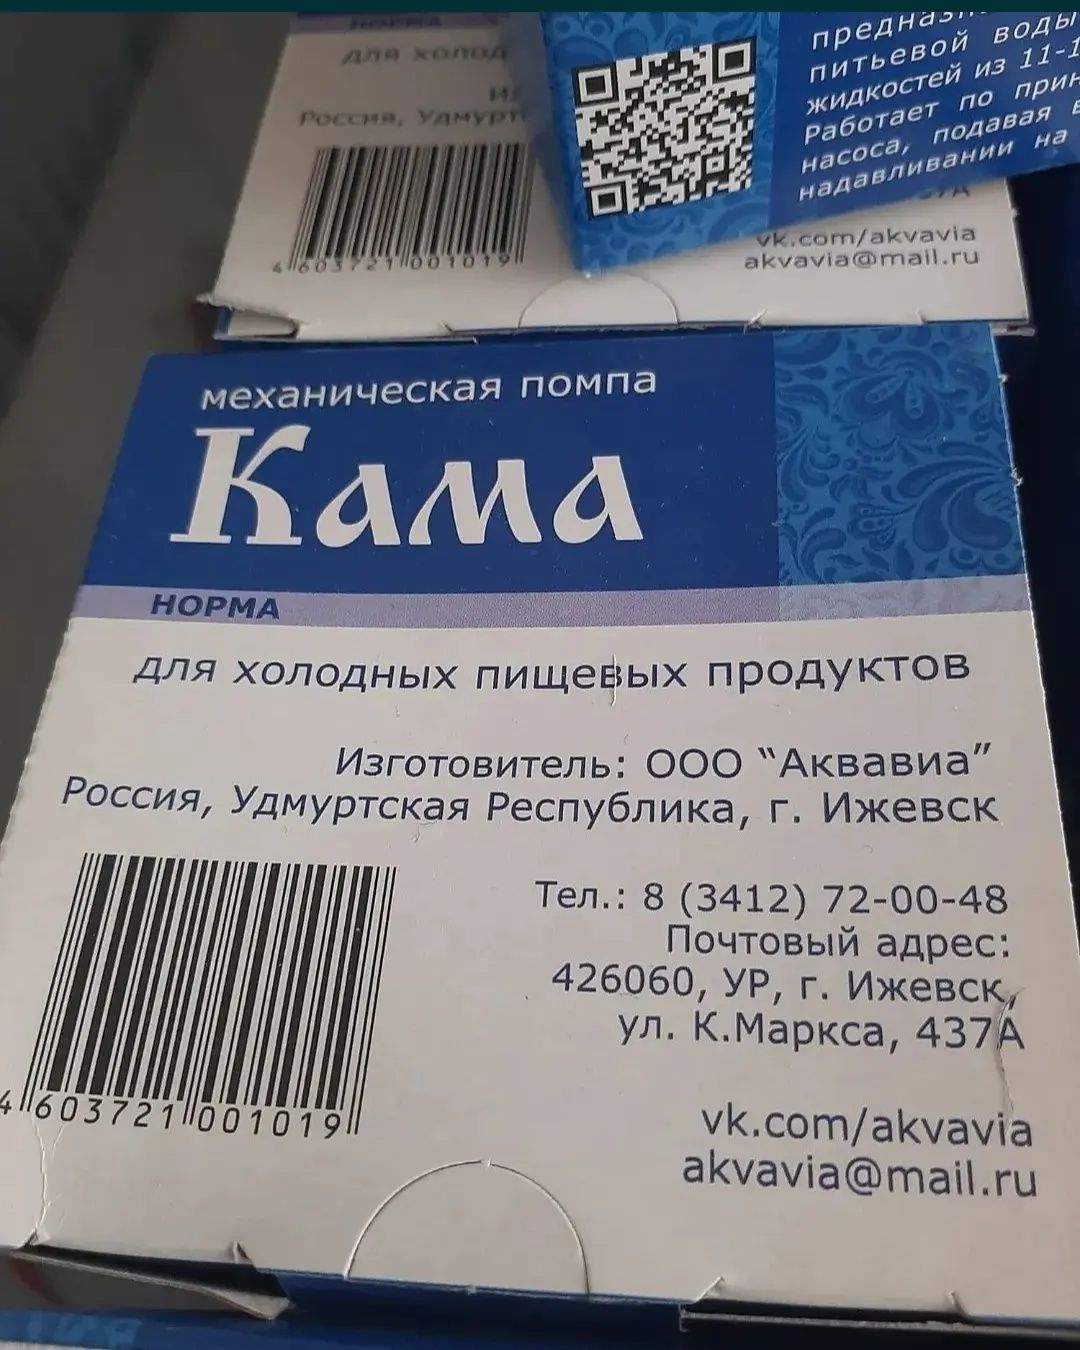 Помпа для воды Кама Норма (Россия). Цена. Качество.